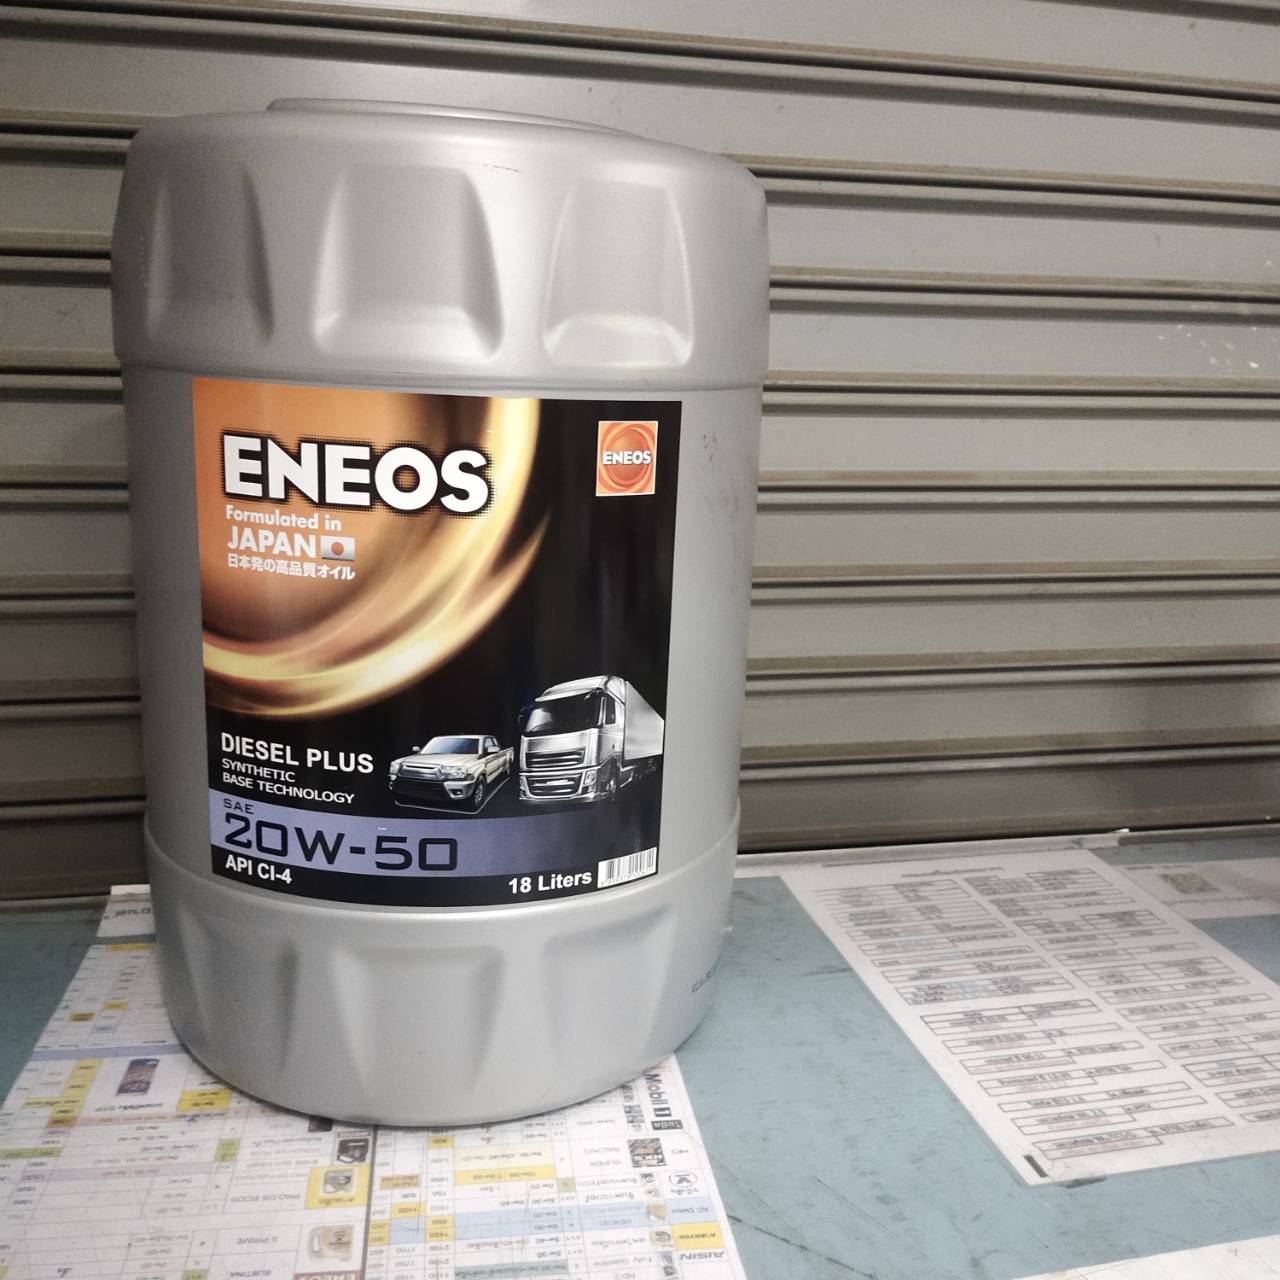 ENEOS 20W-50 น้ำมันเครื่องยนต์ดีเซล ขนาด18 ลิตร